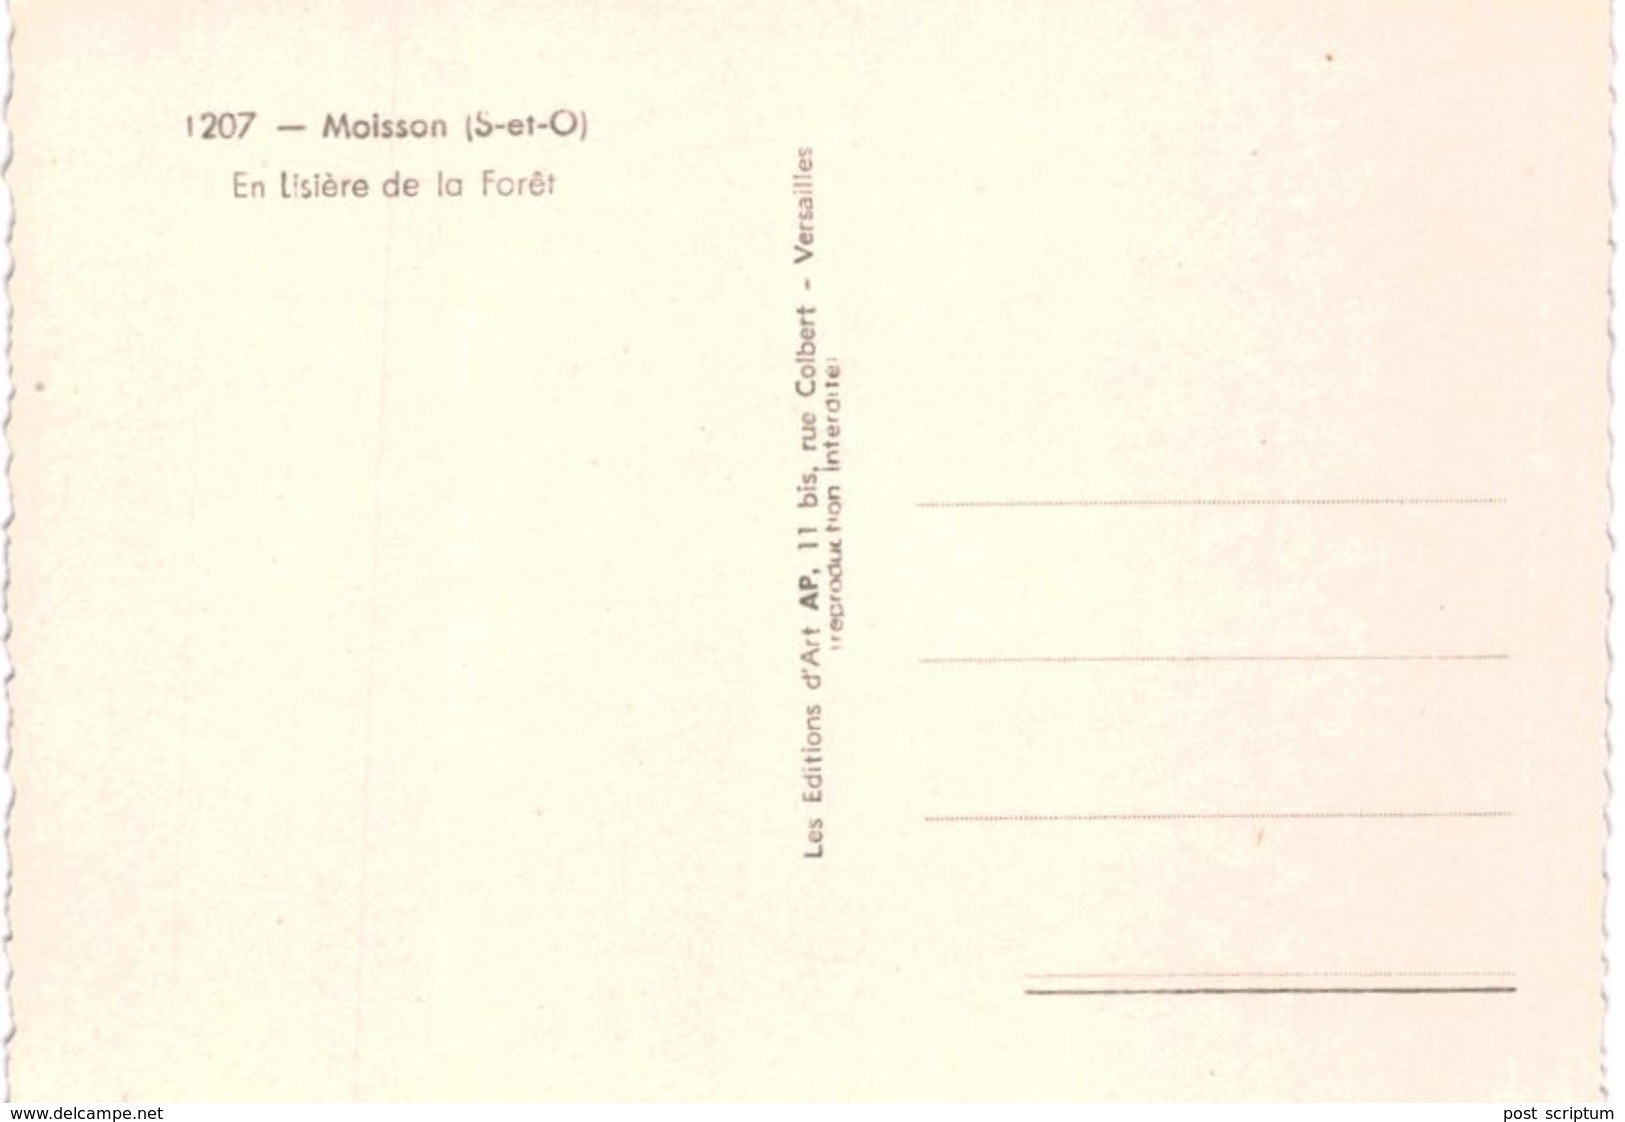 Lot 175 - CPM France en noir et blanc  - plus de 300 cartes (1,44 kg)